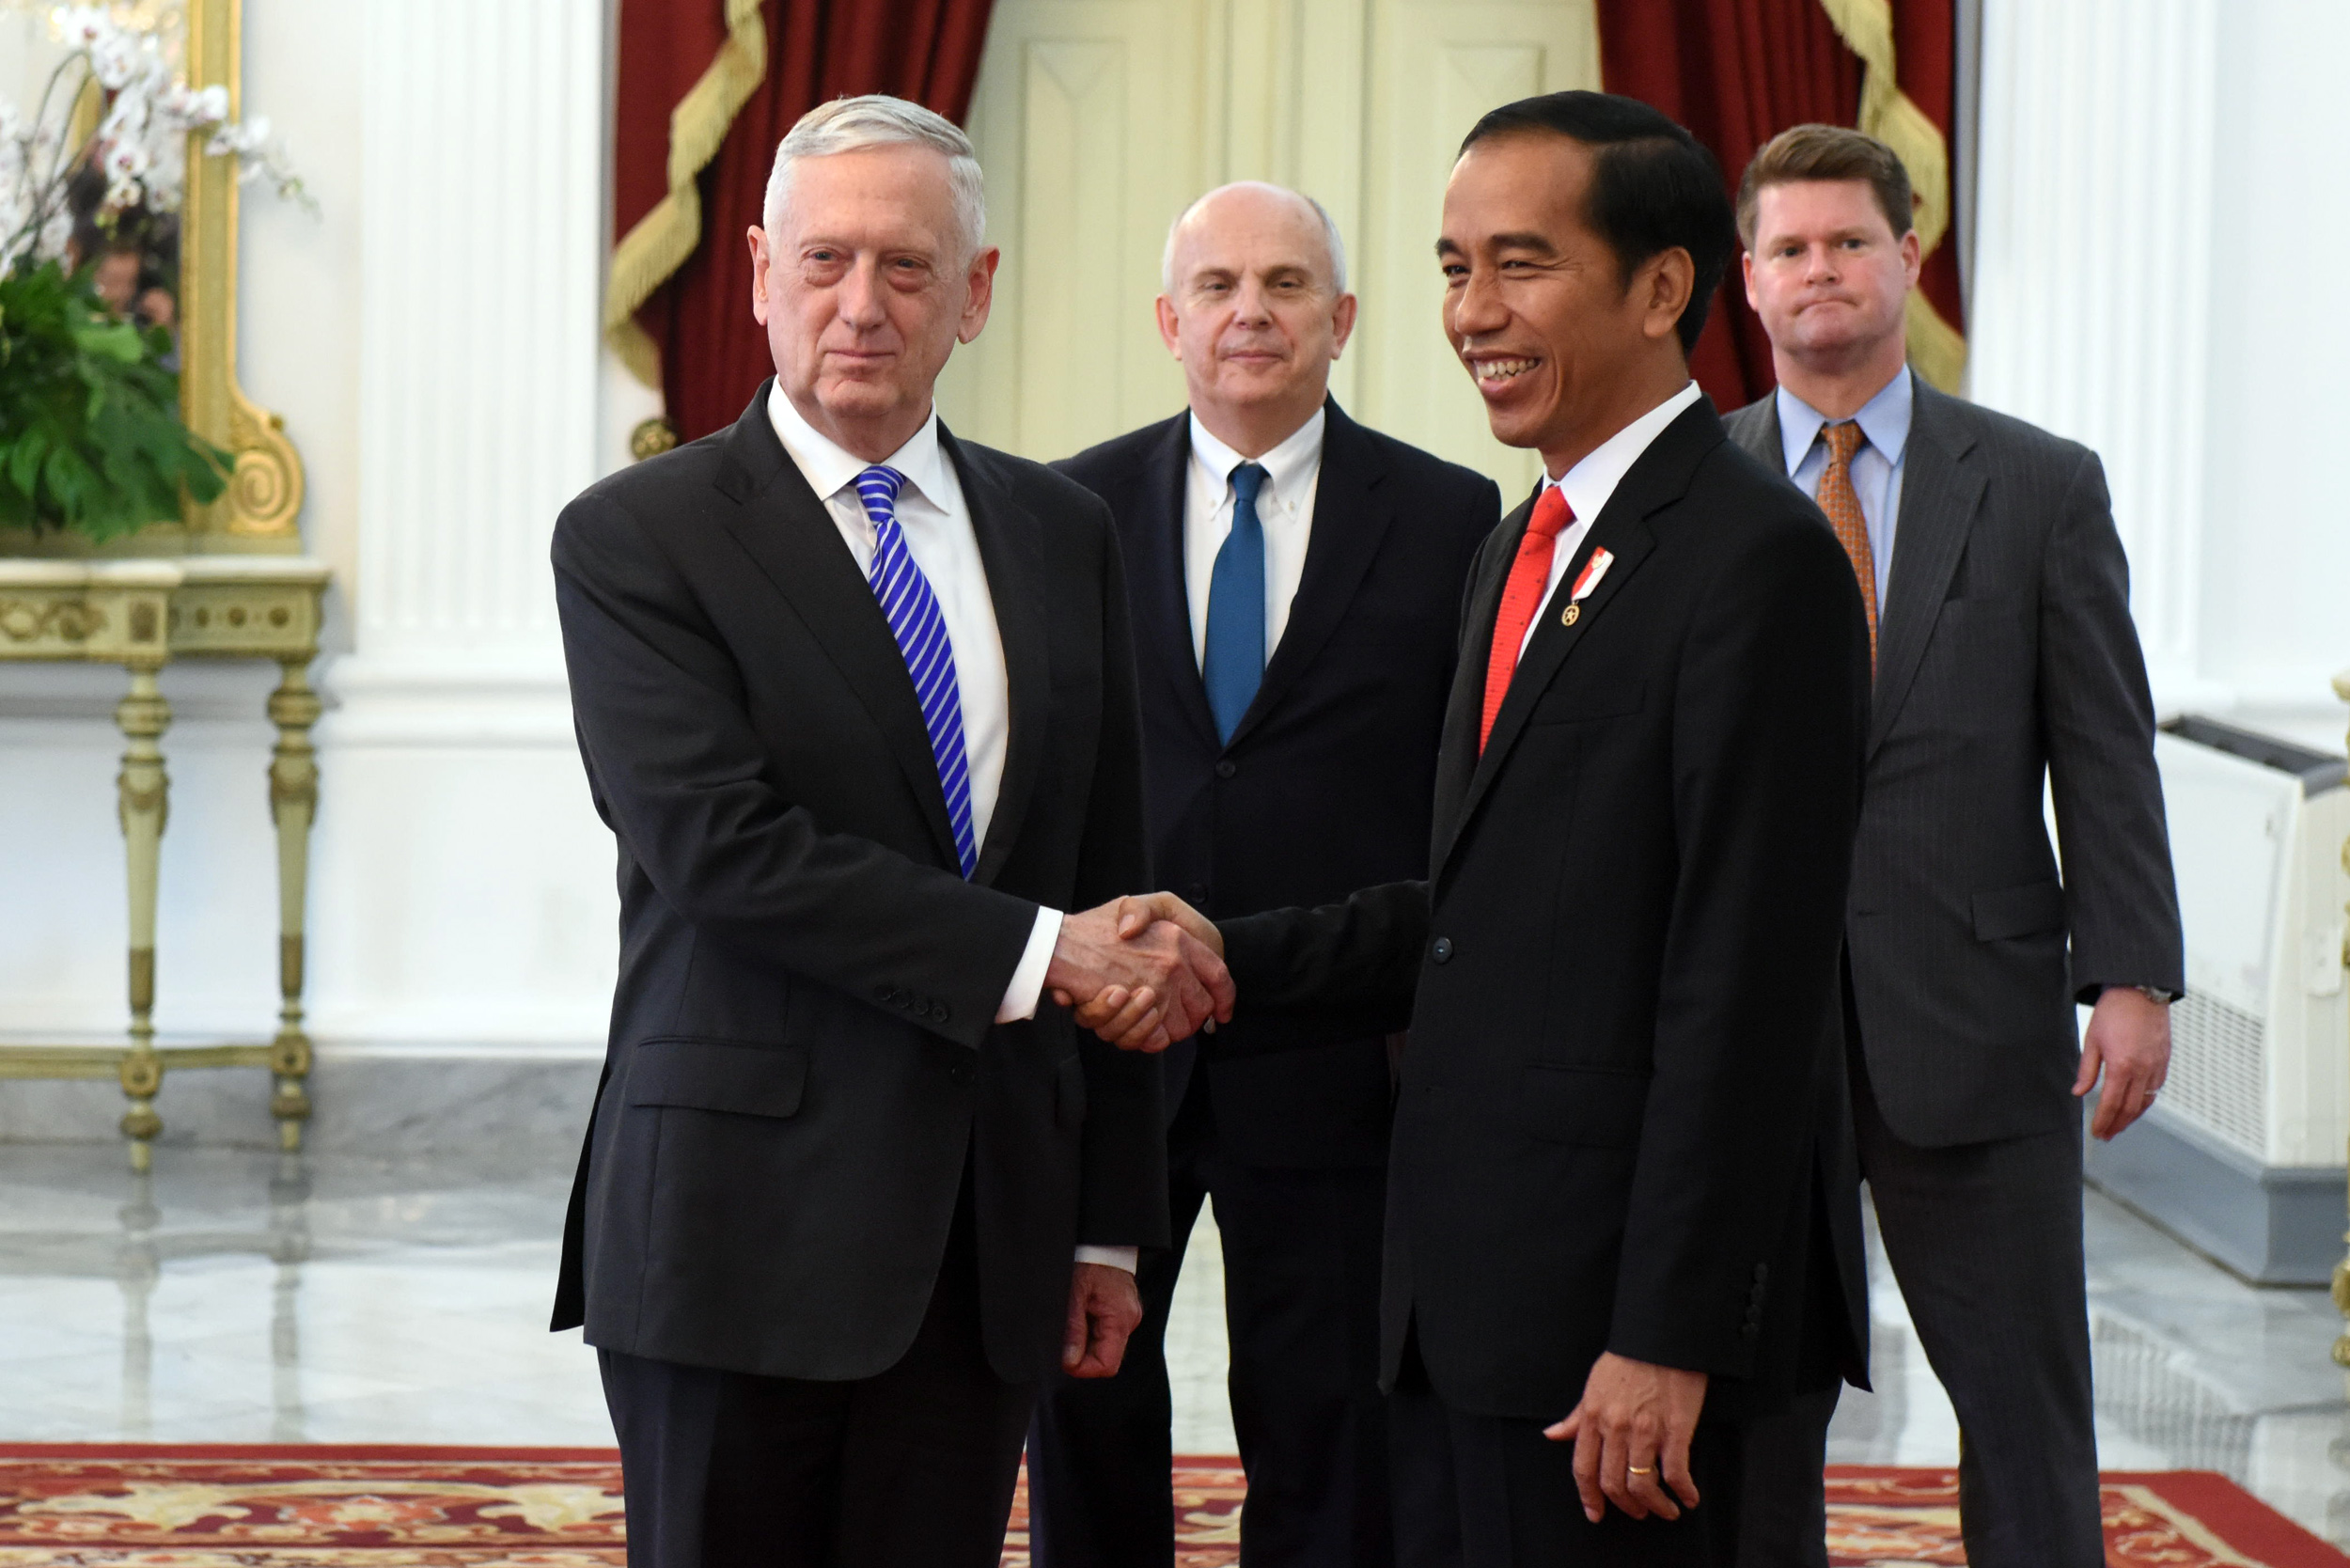 Terima Menhan AS, Presiden Jokowi Sampaikan Keinginan Kerjasama Produksi Alat Ketahanan